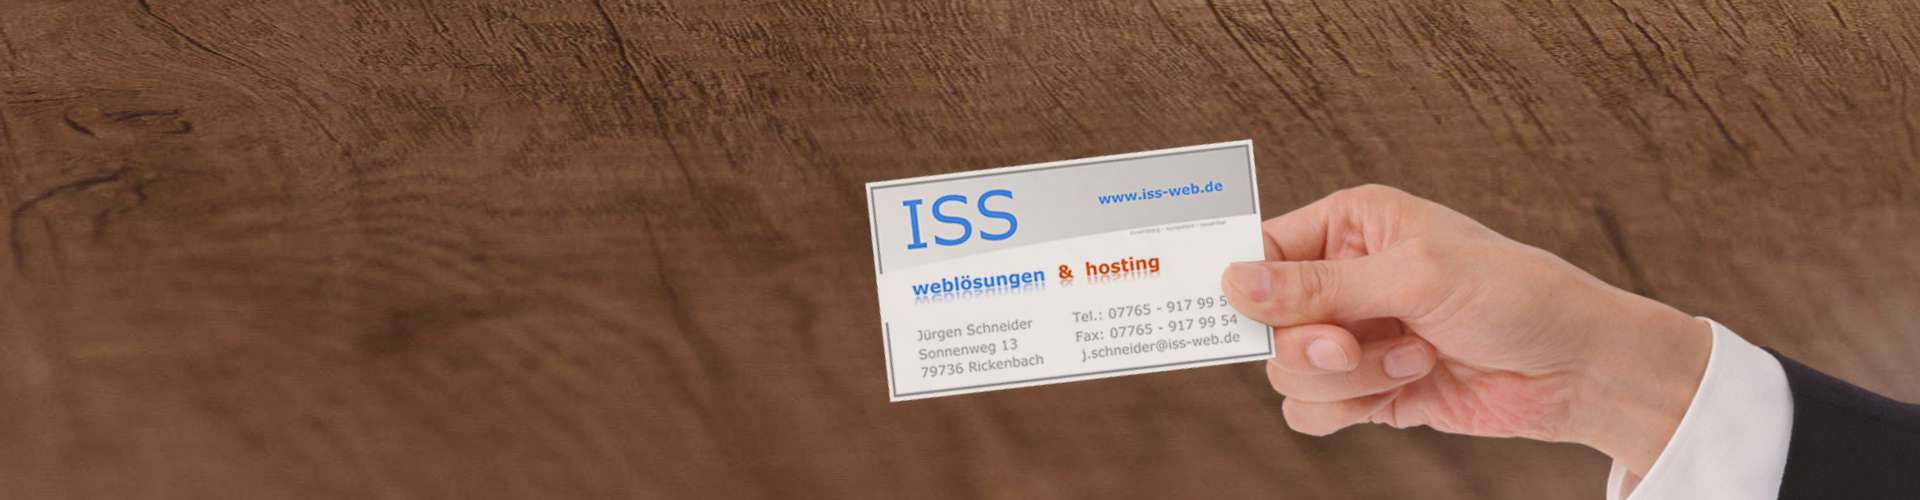 Referenzen Handwerk & Bau | ISS - Internet Services | websites, hosting & digital marketing